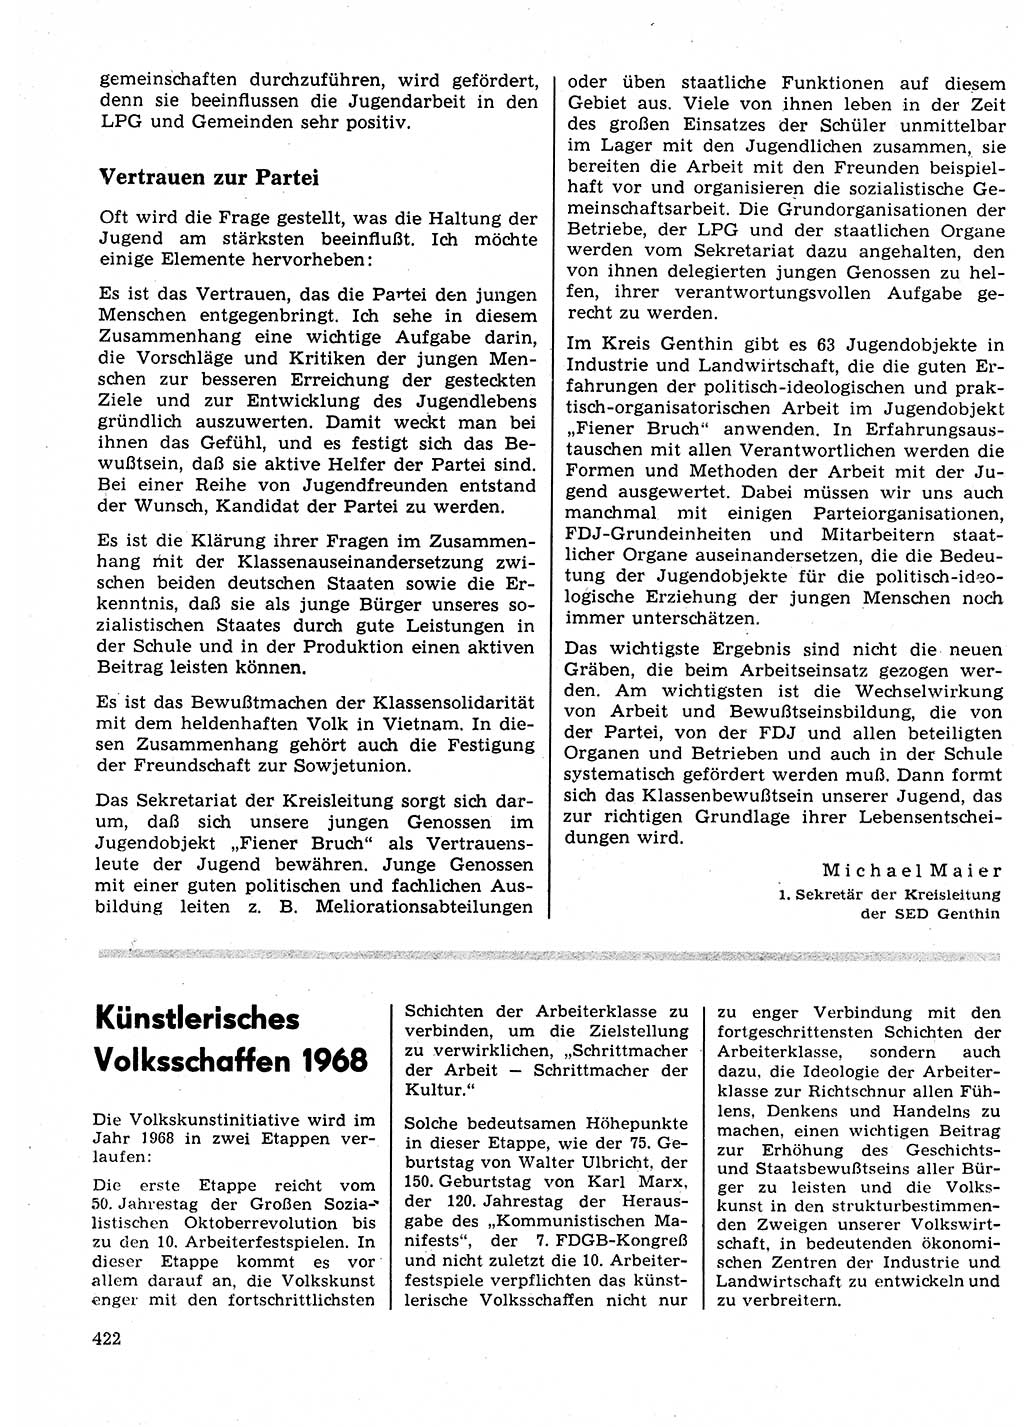 Neuer Weg (NW), Organ des Zentralkomitees (ZK) der SED (Sozialistische Einheitspartei Deutschlands) für Fragen des Parteilebens, 23. Jahrgang [Deutsche Demokratische Republik (DDR)] 1968, Seite 422 (NW ZK SED DDR 1968, S. 422)